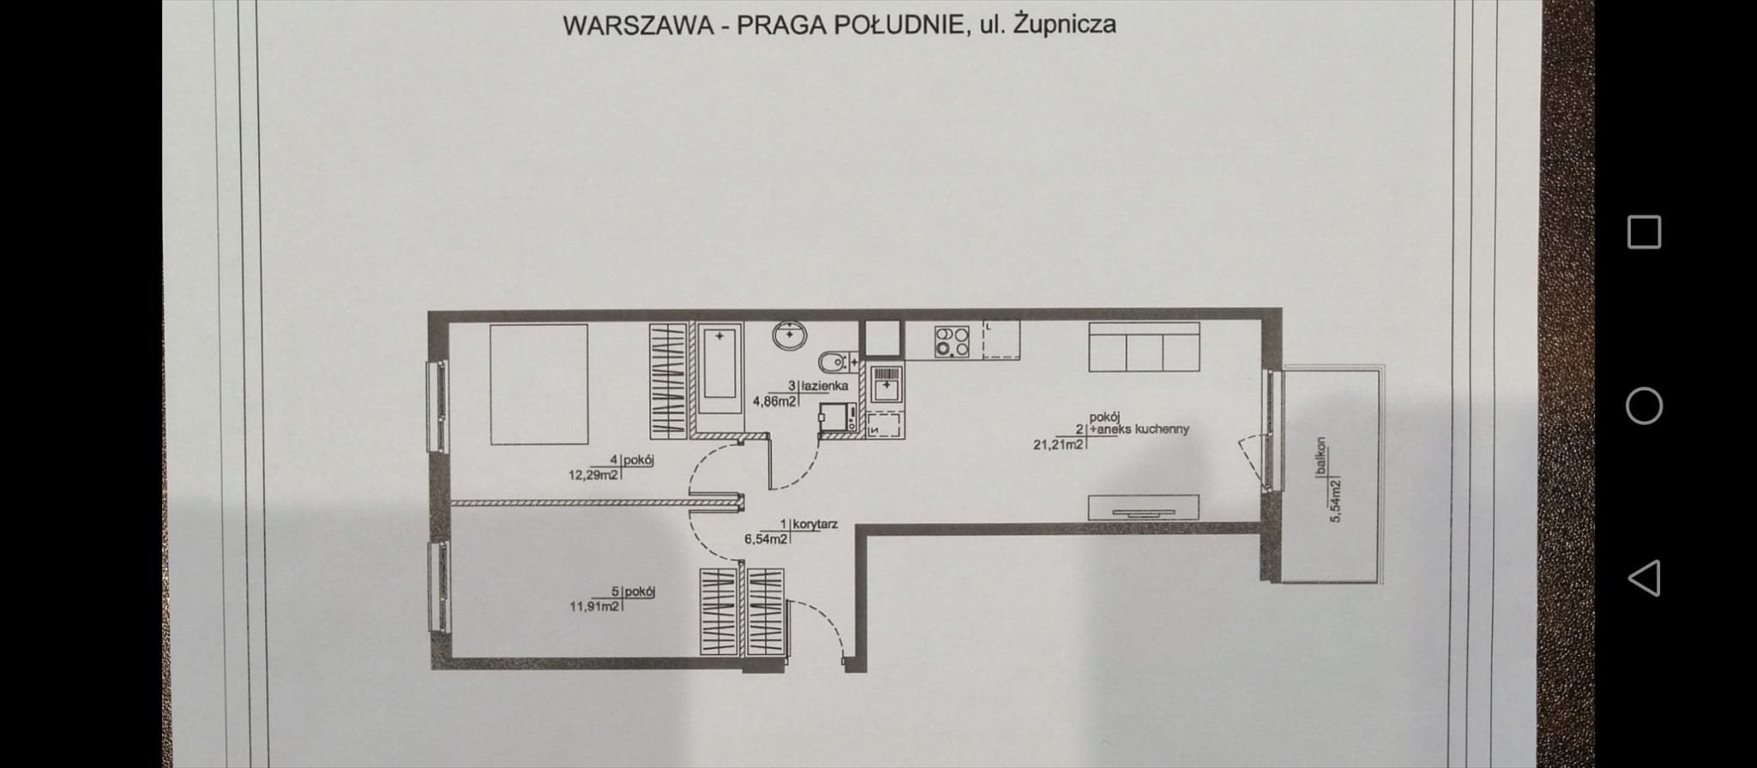 Mieszkanie trzypokojowe na sprzedaż Warszawa, Praga-Południe, Żupnicza  58m2 Foto 16